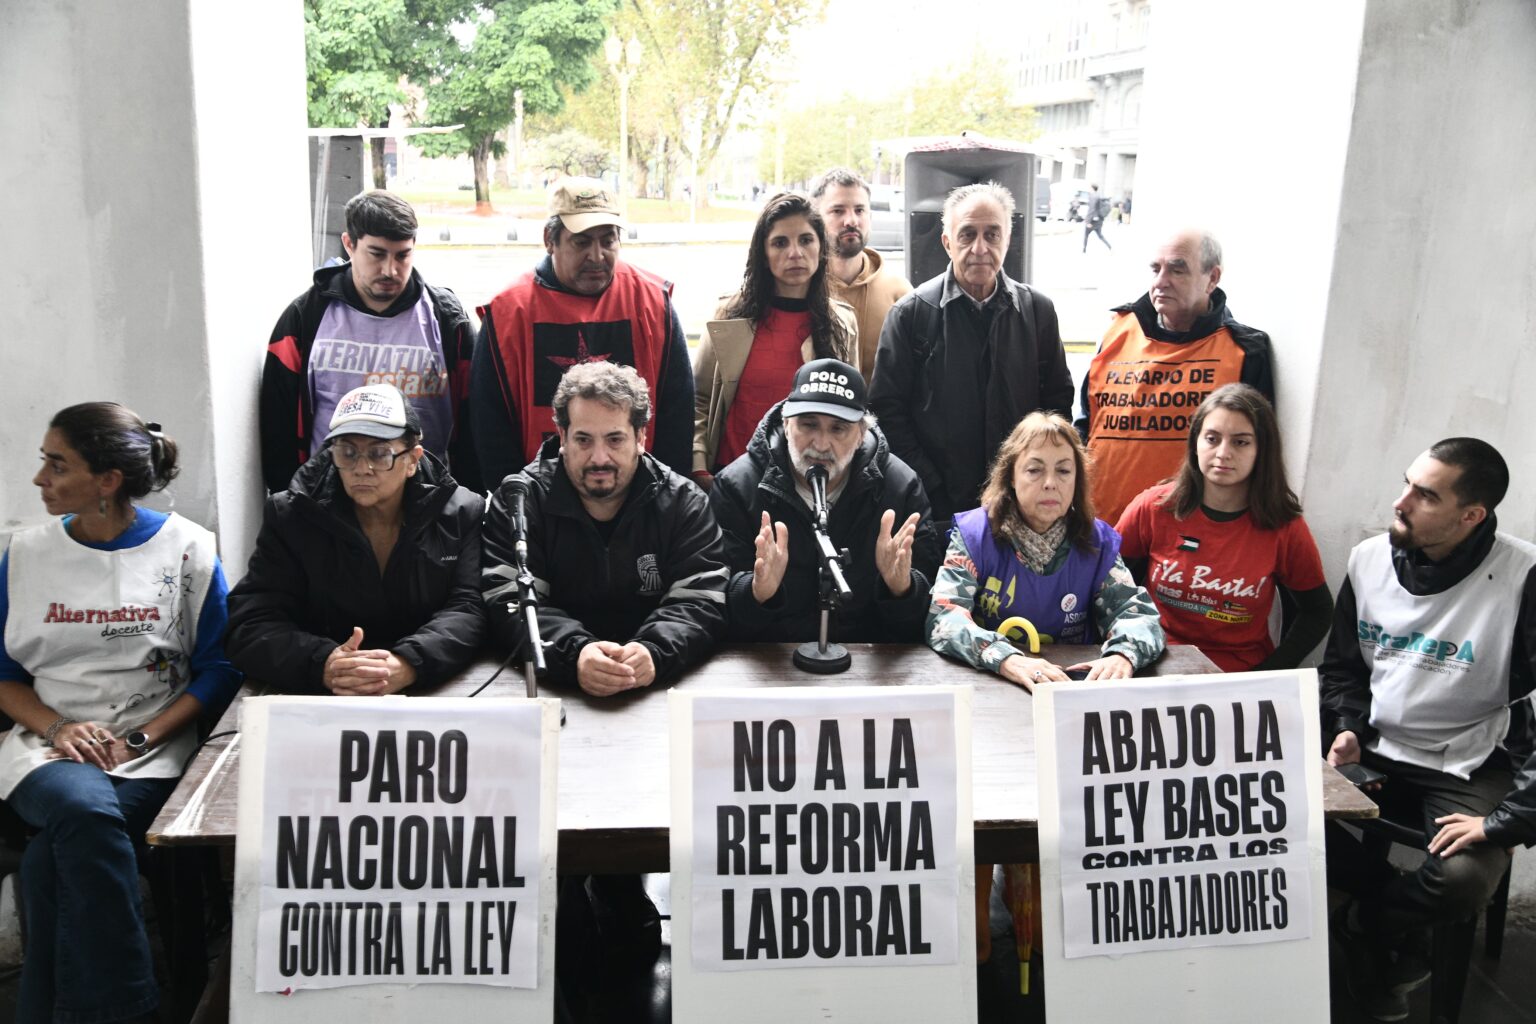 Néstor Pitrola: “El 29 tenemos que estar todos en el Congreso contra la ley de bases antiobrera de Milei y la oposición”